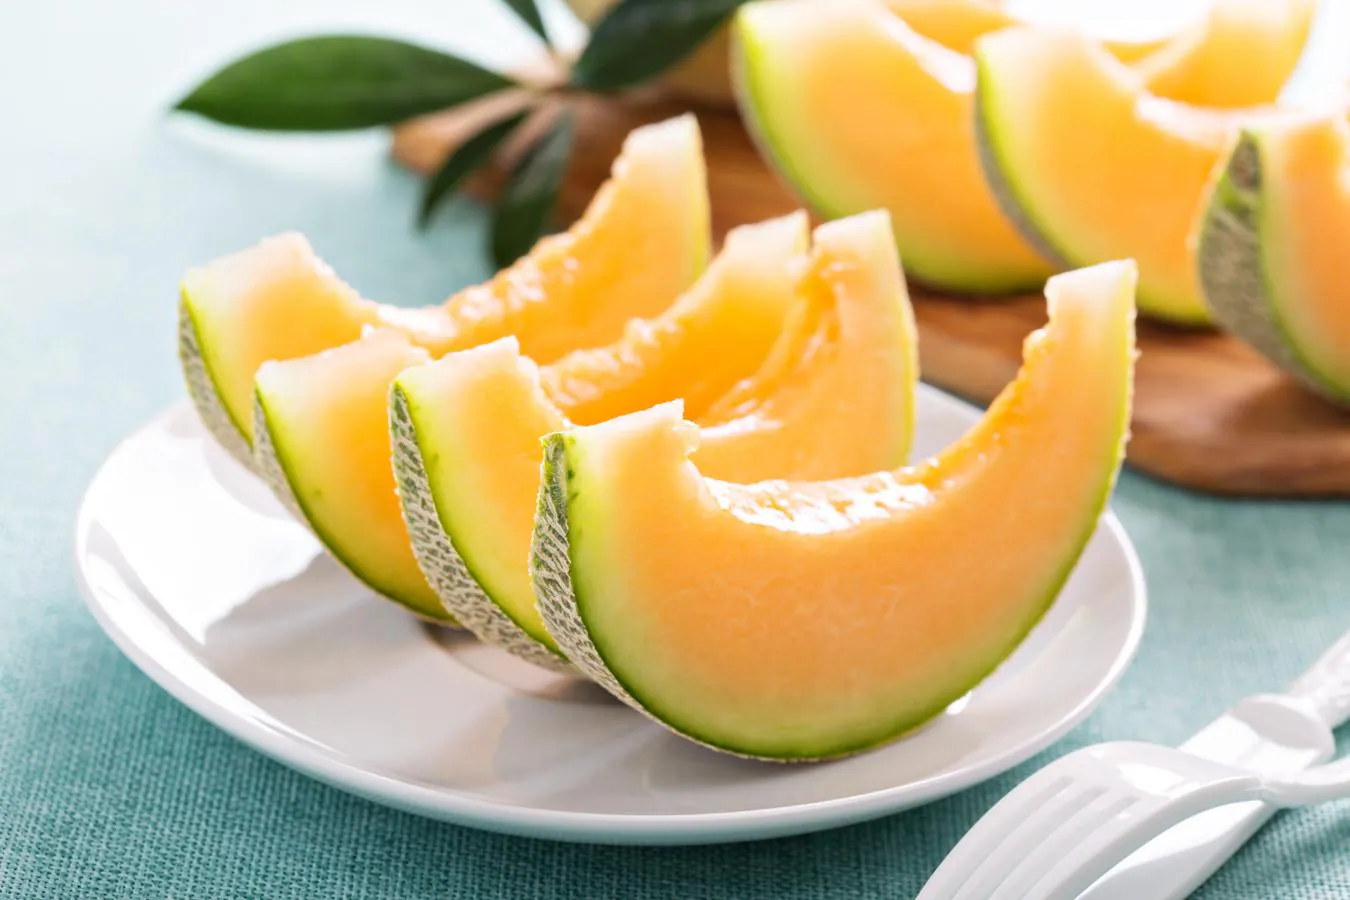 El melón cantalupo, el tipo de melón con más vitamina C. La variedad cantalupo resulta apreciada por su aroma y sabor. Su pulpa de color anaranjado es rica en betacaroteno (provitamina A), ya que 100 gramos aporta la tercera parte de las necesidades diarias. Contiene más vitamina C que otros melones: unos 37 mg por cada 100 gramos.